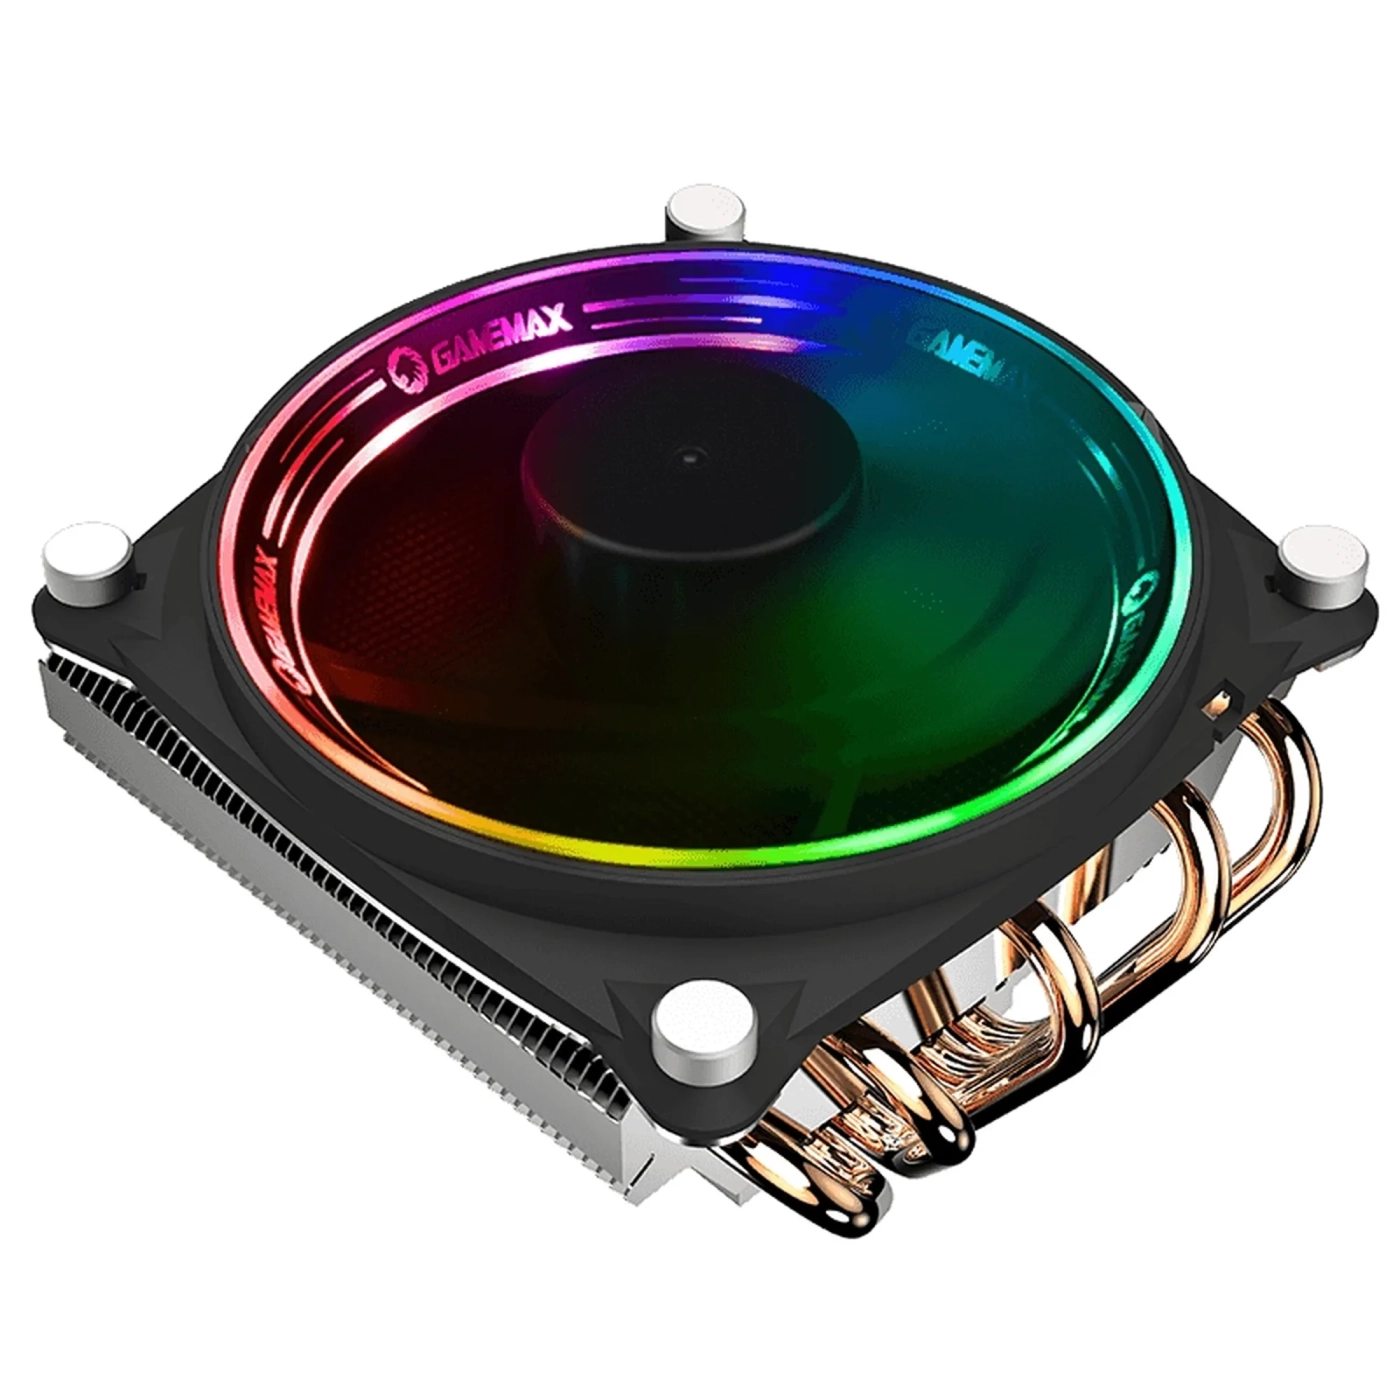 Купить Процессорный кулер GameMax Gamma 300 Rainbow - фото 1